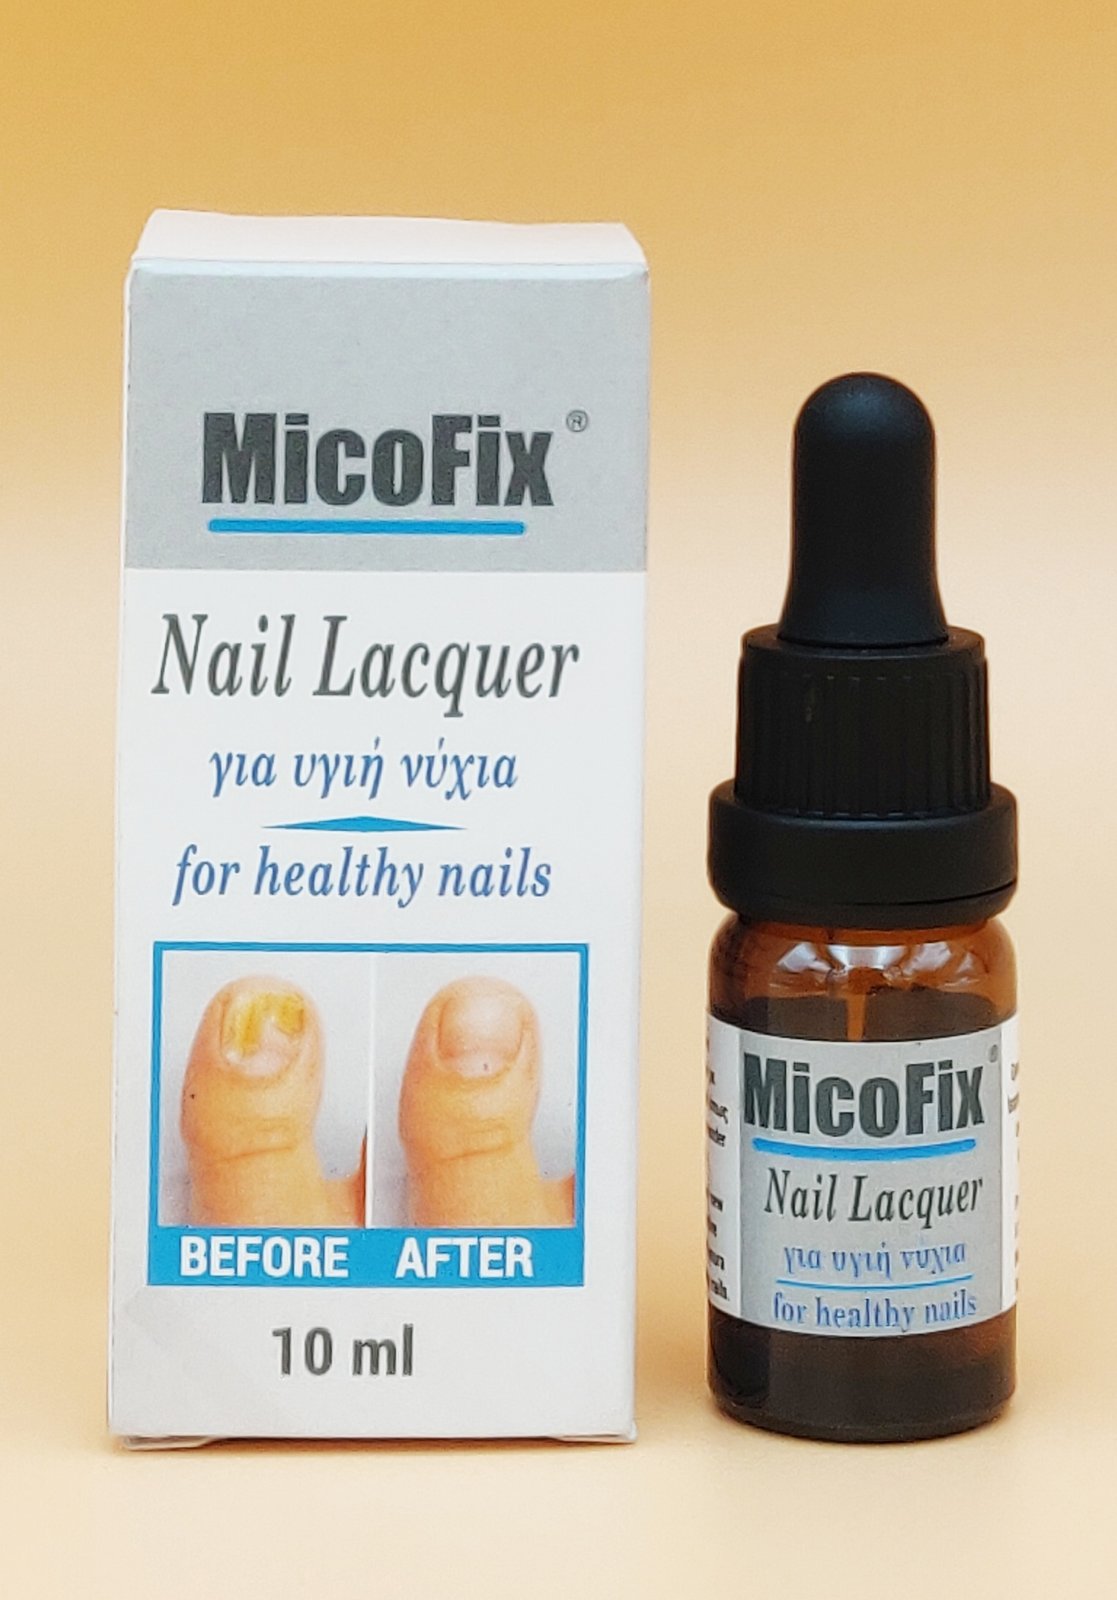 MicoFix για υγιή νύχια